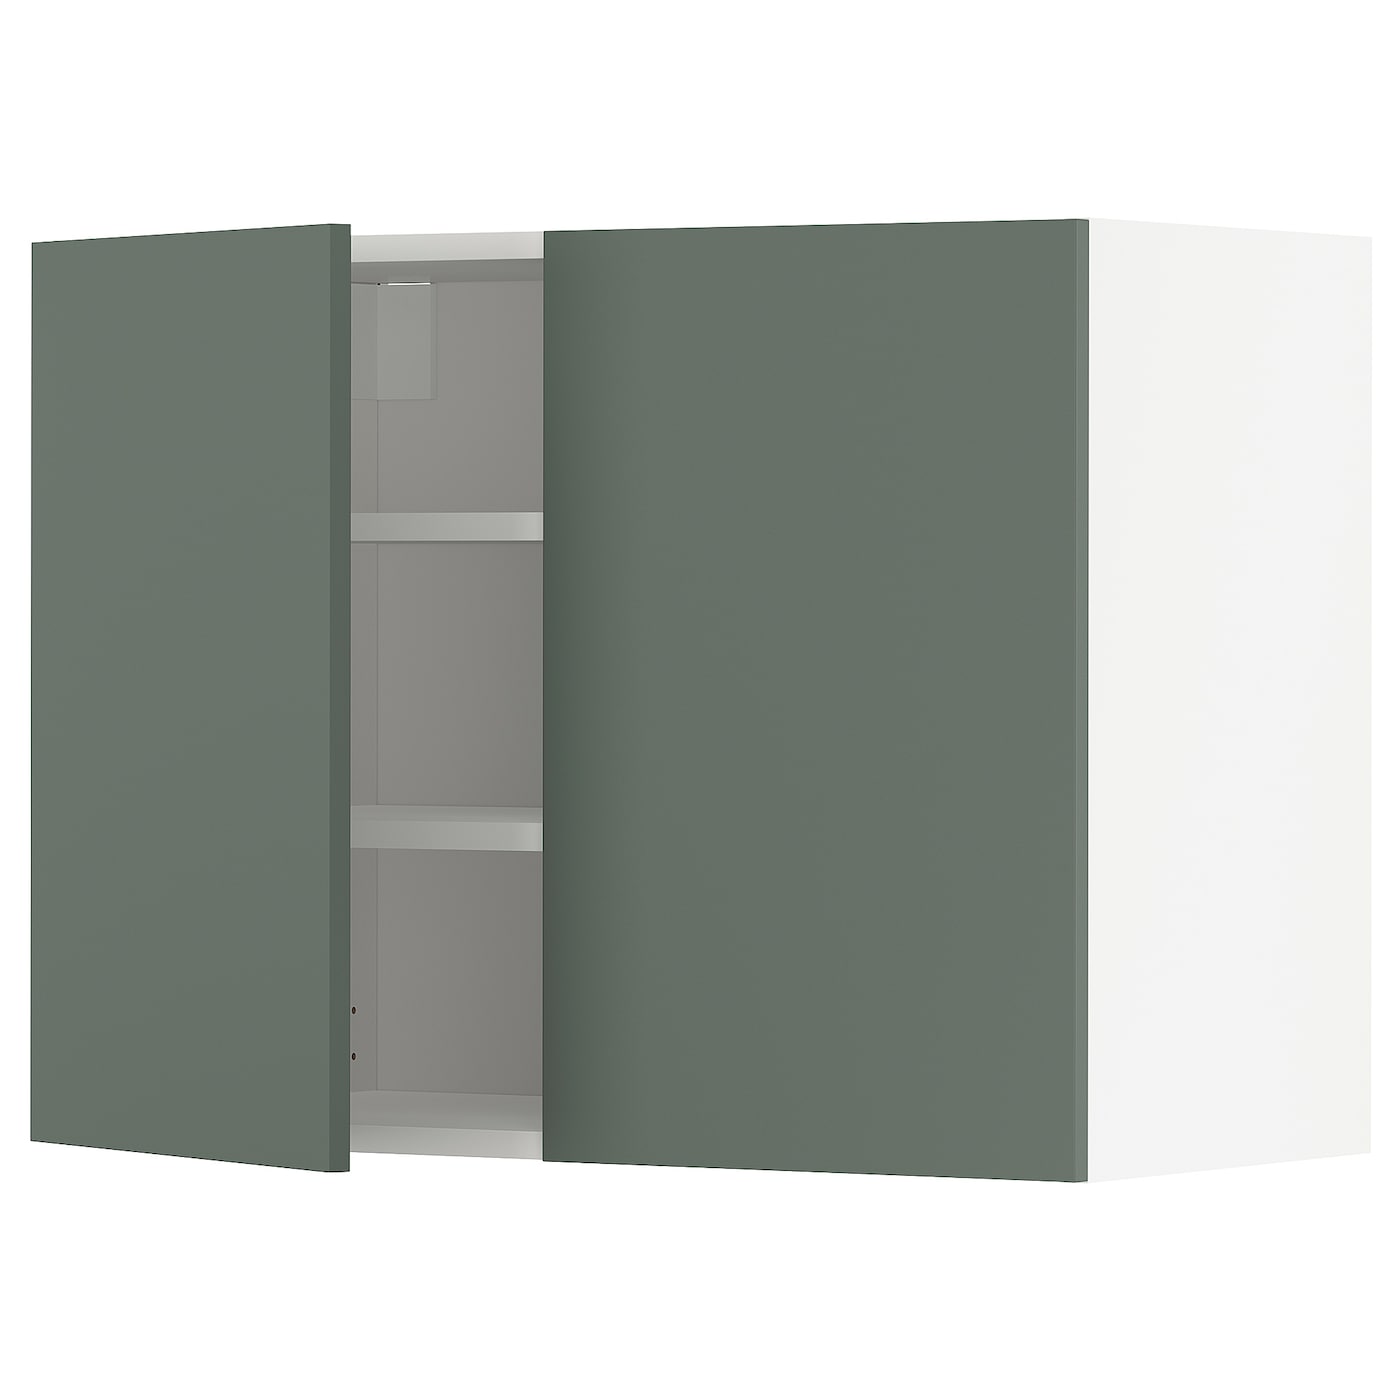 Навесной шкаф с полкой - METOD IKEA/ МЕТОД ИКЕА, 80х60 см, белый/темно-зеленый